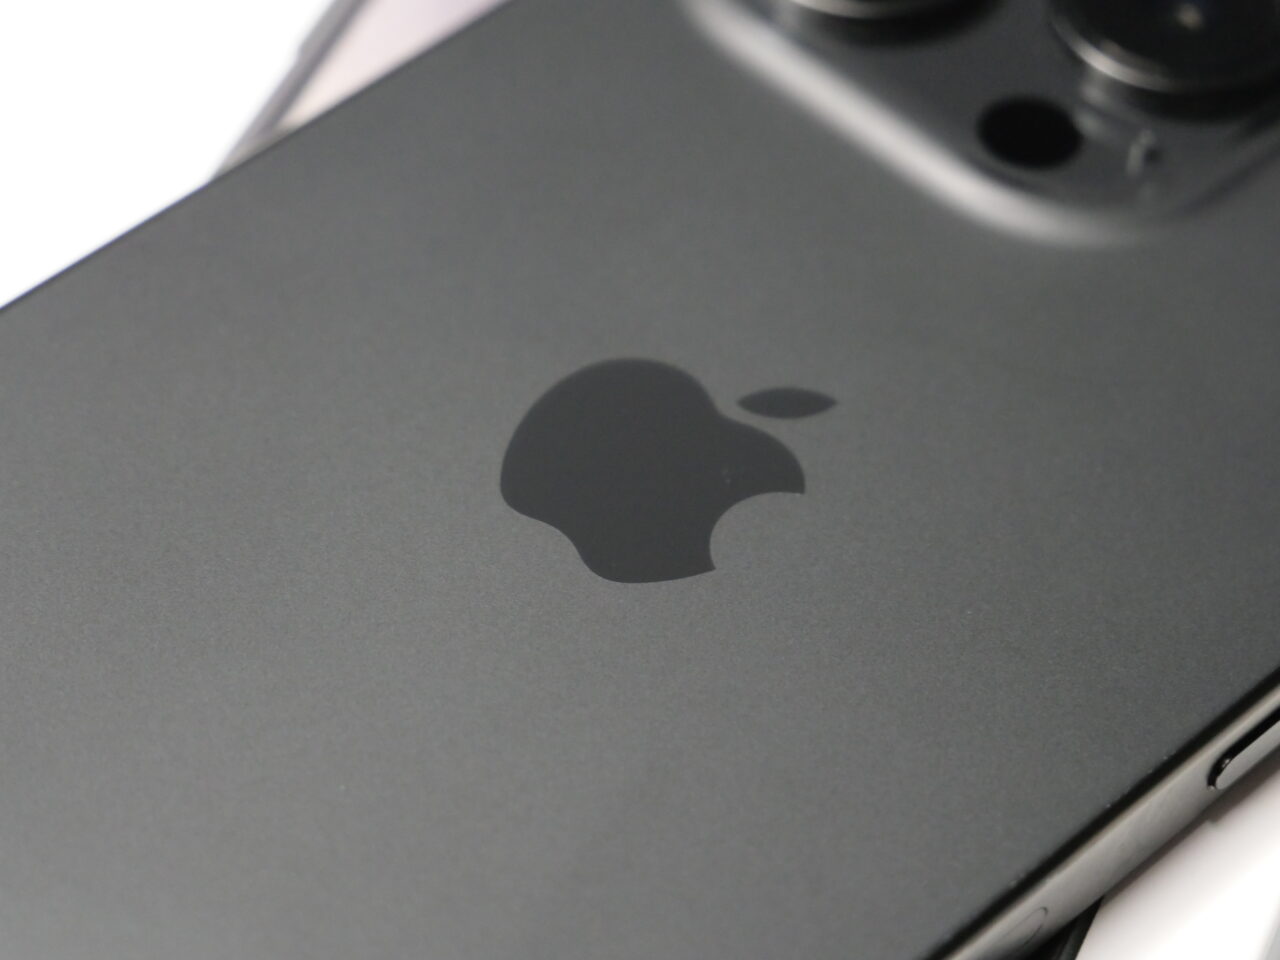 Część tylna czarnego smartfona z widocznym logo Apple i fragmentem systemu kamer.